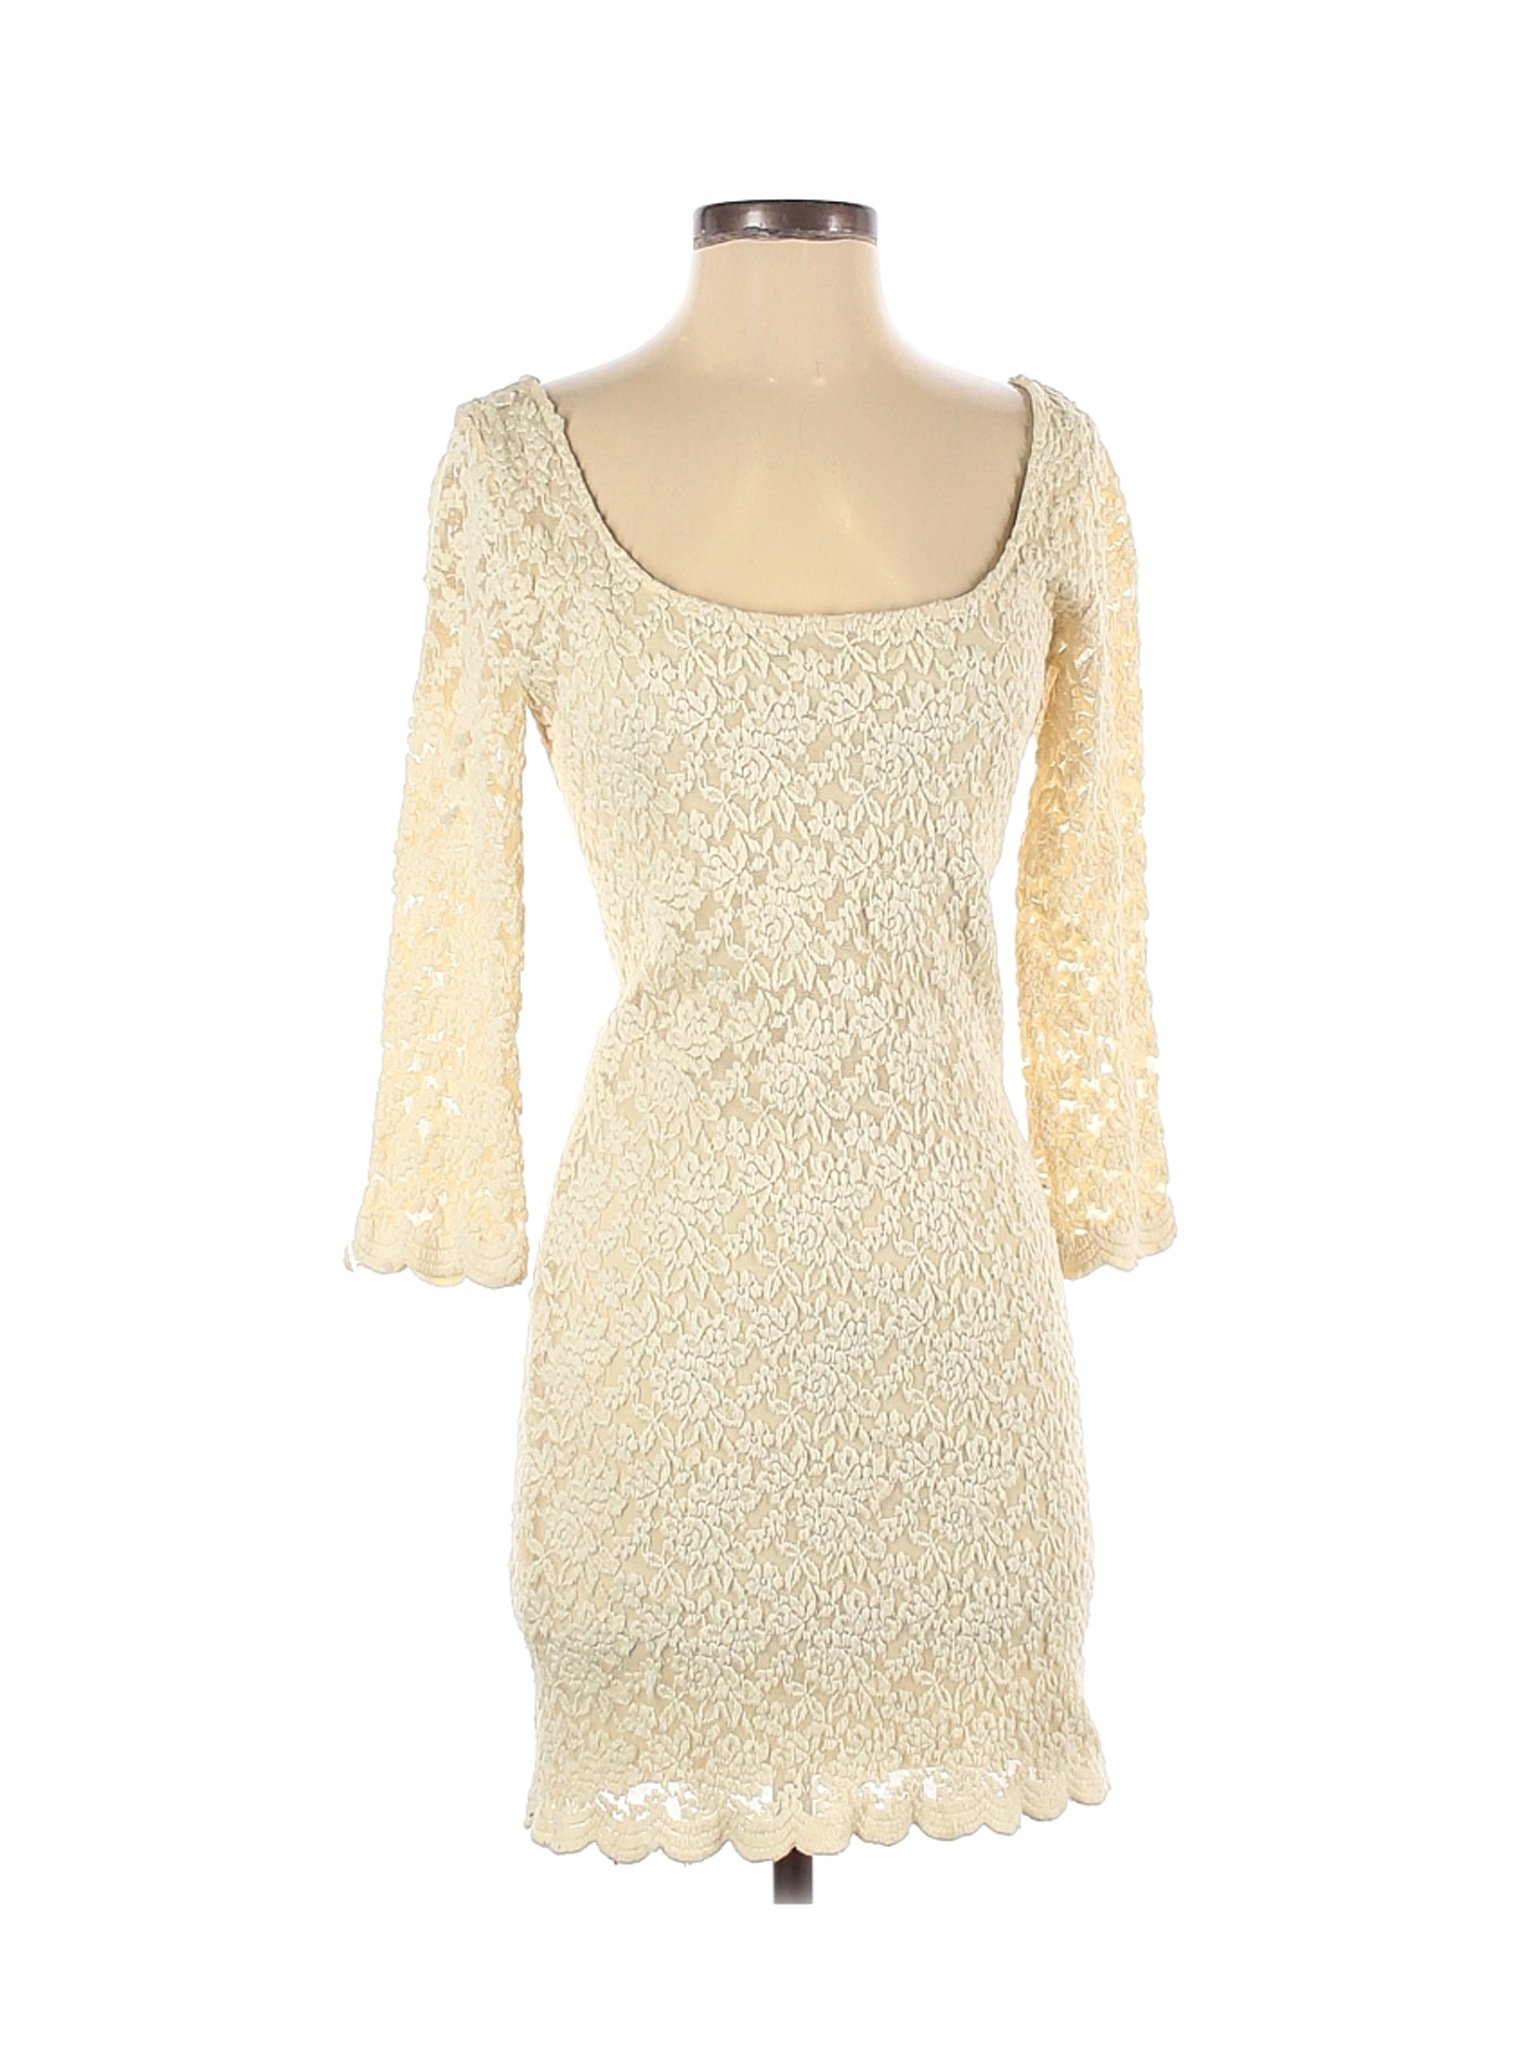 Love 21 Women Ivory Casual Dress S | eBay